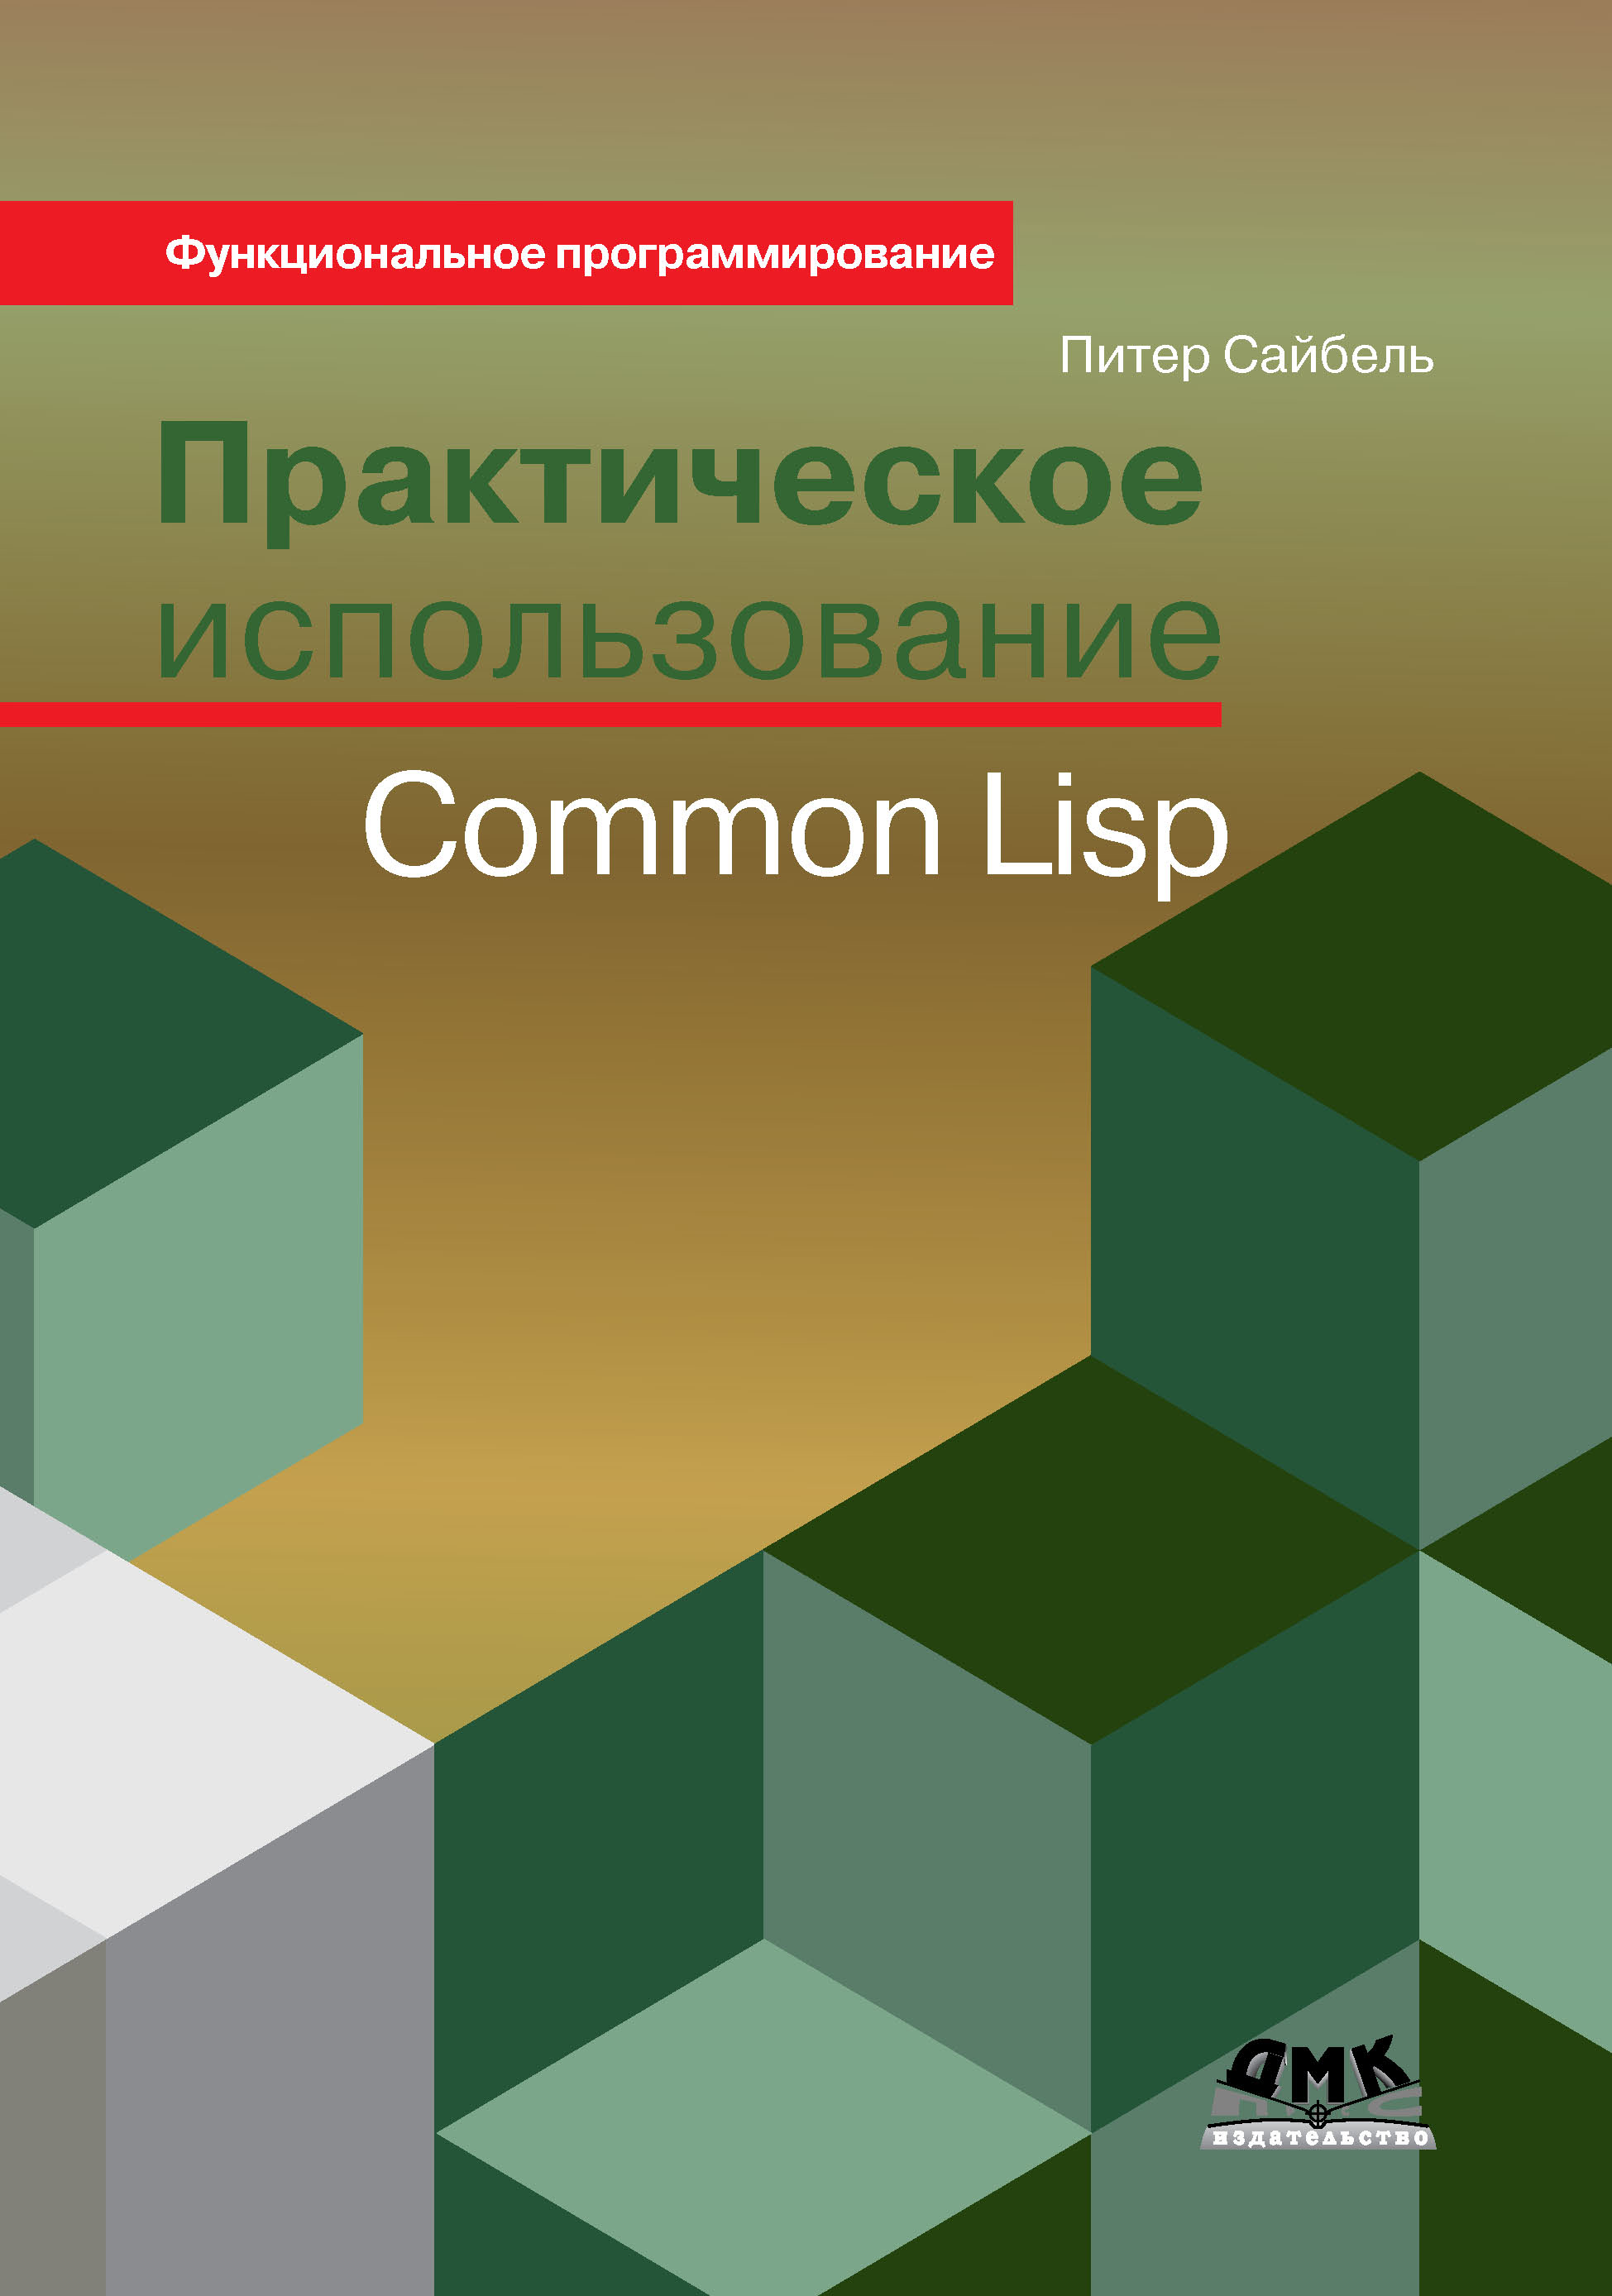 Книга Функциональное программирование Практическое использование Common Lisp созданная Питер Сайбель, А. Я. Отт может относится к жанру зарубежная компьютерная литература, программирование. Стоимость электронной книги Практическое использование Common Lisp с идентификатором 22877594 составляет 639.00 руб.